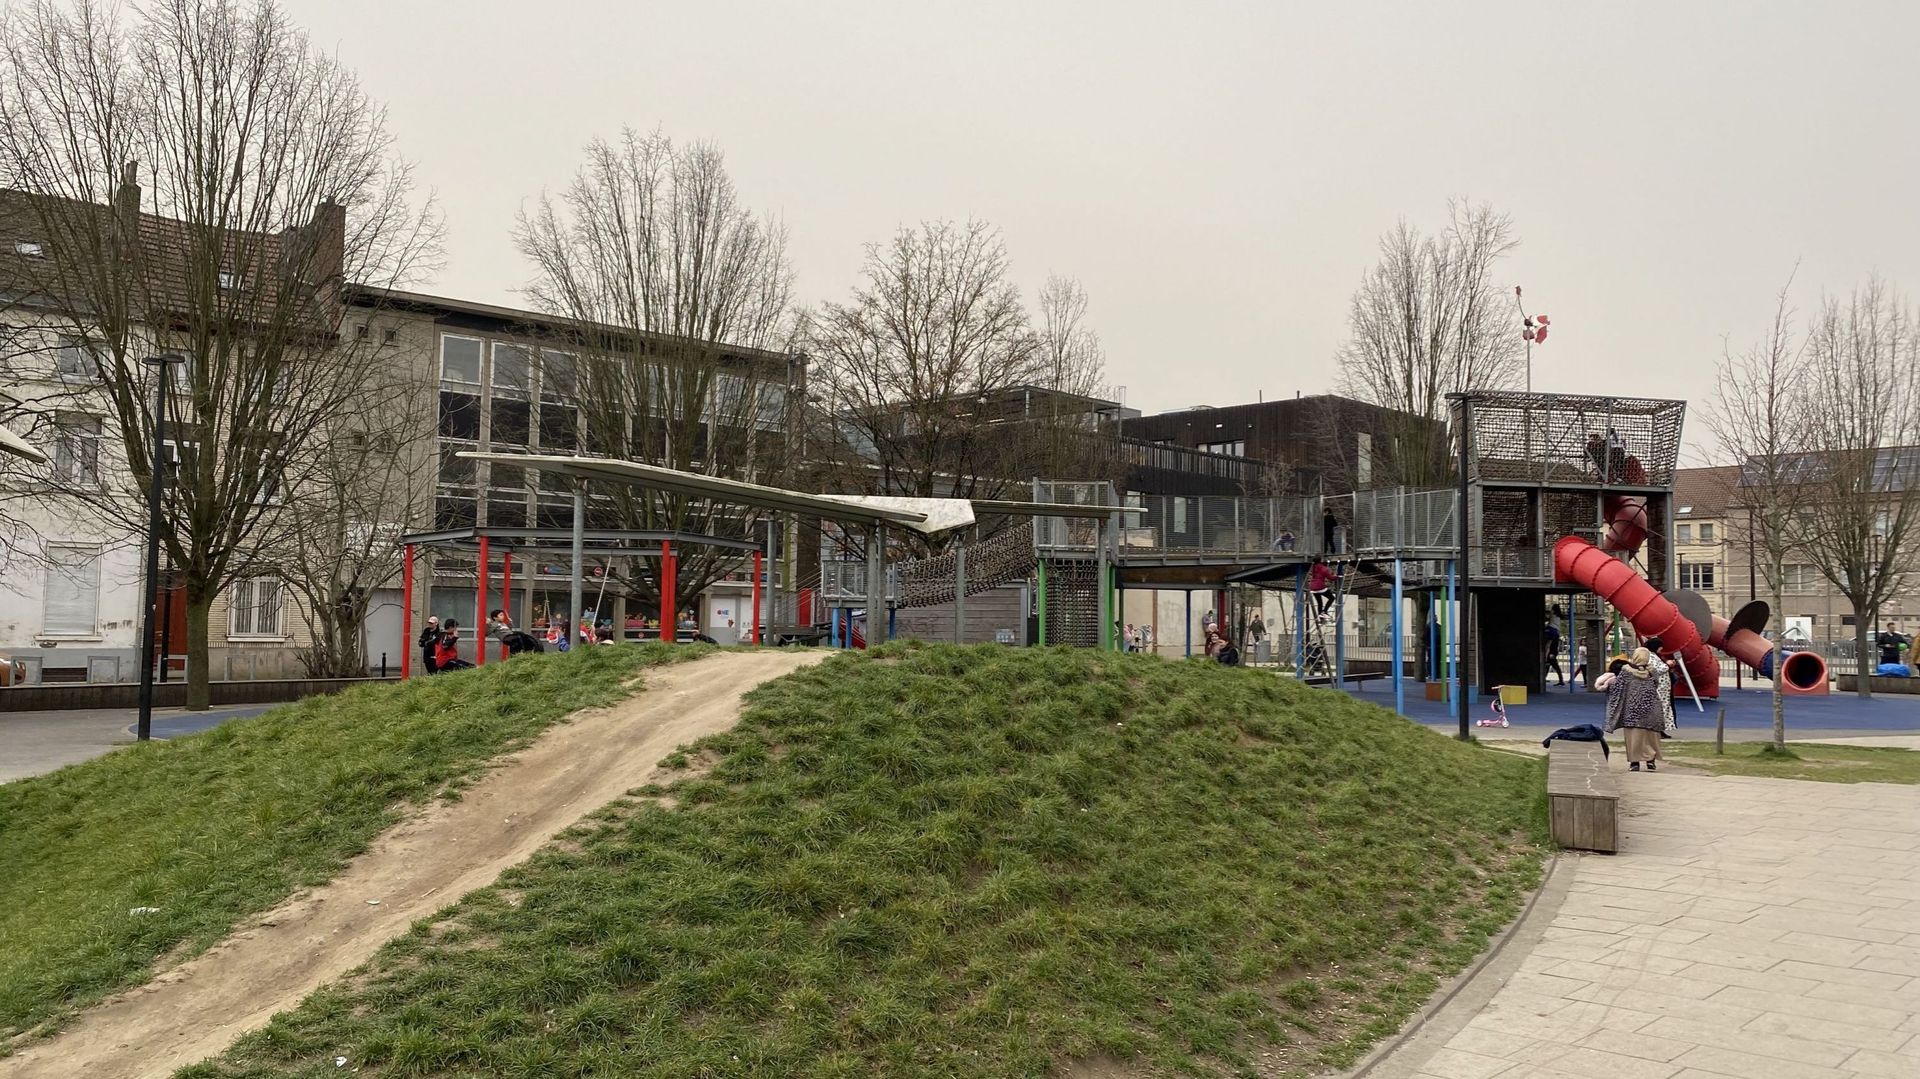 Le parc Bonnevie est aujourd’hui un lieu central de rencontre et d’activités pour petits et grands à Molenbeek. Ce n’était pas vraiment le cas avant sa rénovation.